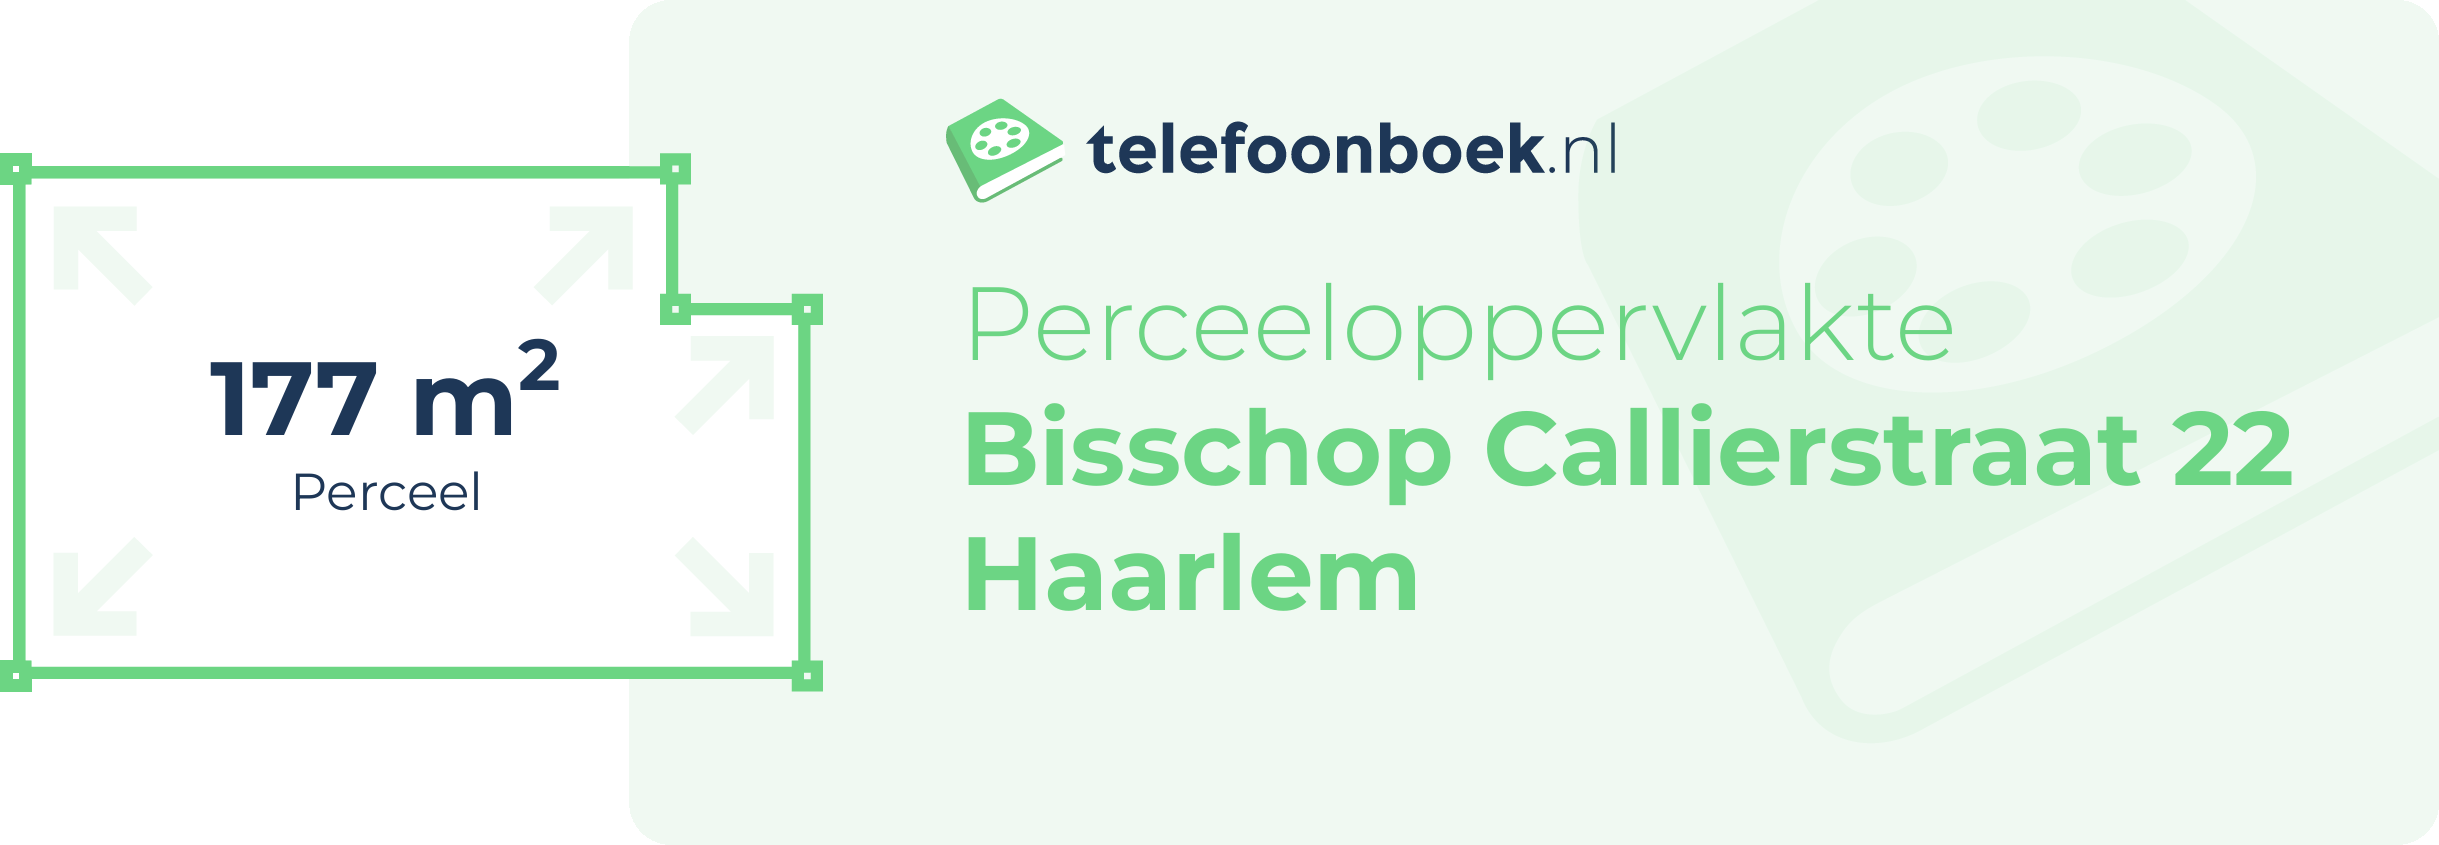 Perceeloppervlakte Bisschop Callierstraat 22 Haarlem